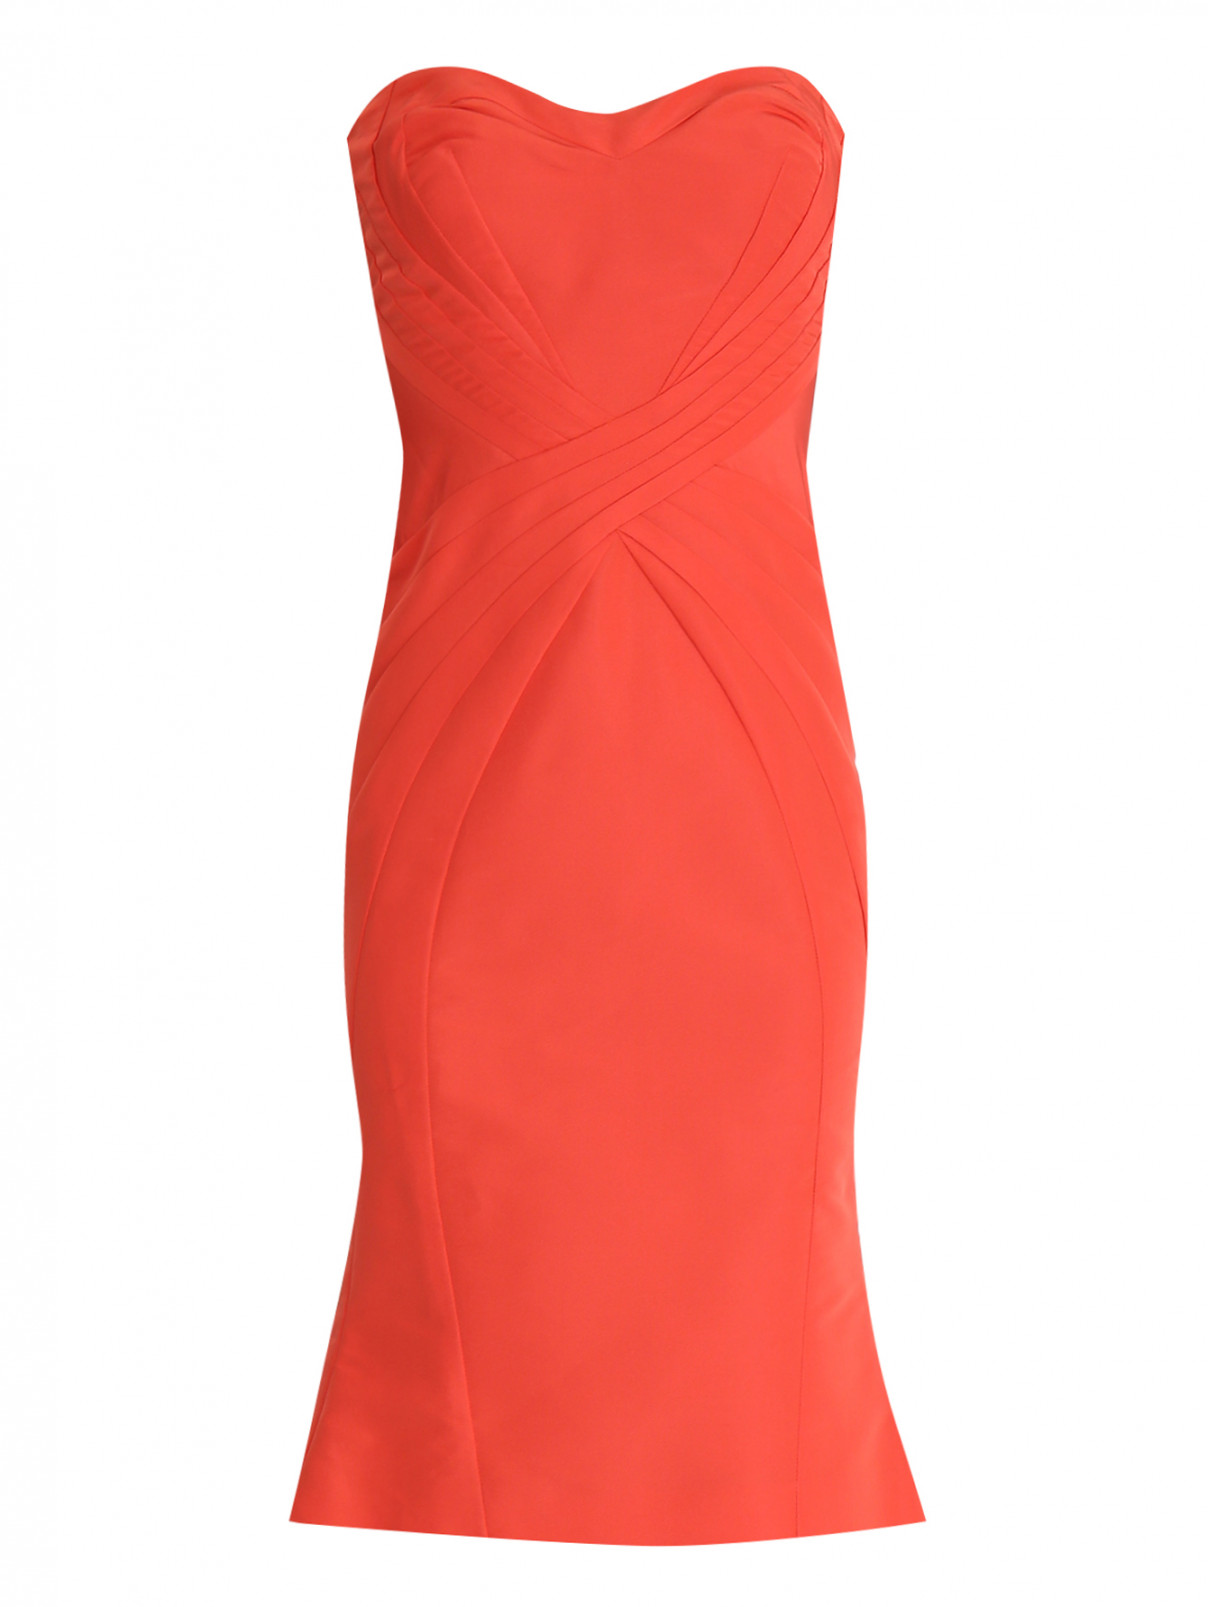 Платье-бандо без рукавов Zac Posen  –  Общий вид  – Цвет:  Оранжевый